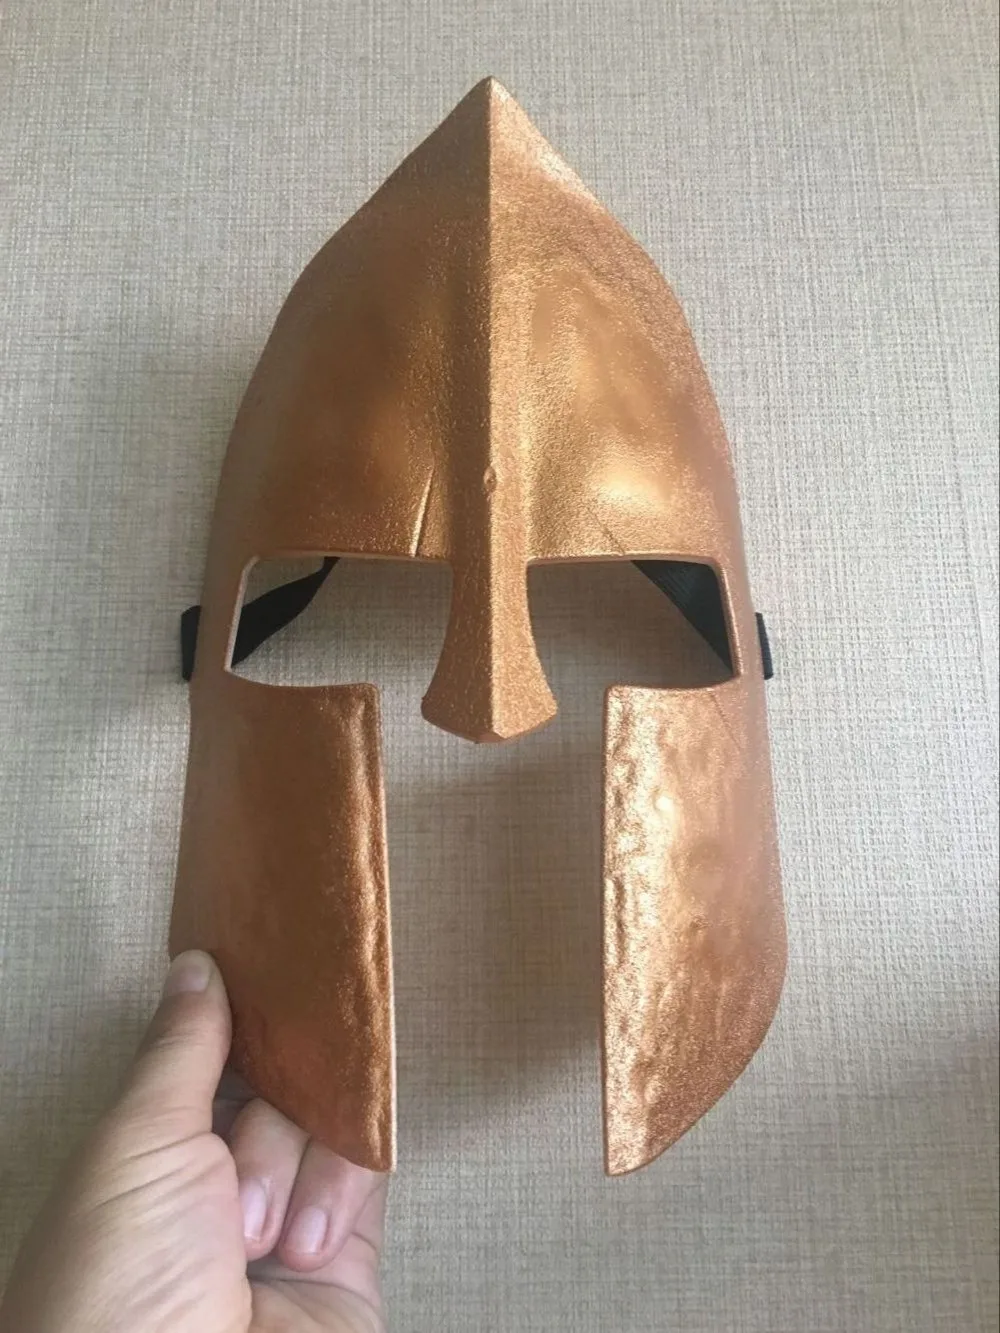 Косплей Спартанс 300 Маска Золотой шлем маска маскарад, вечеринка, Хэллоуин танец день рождения